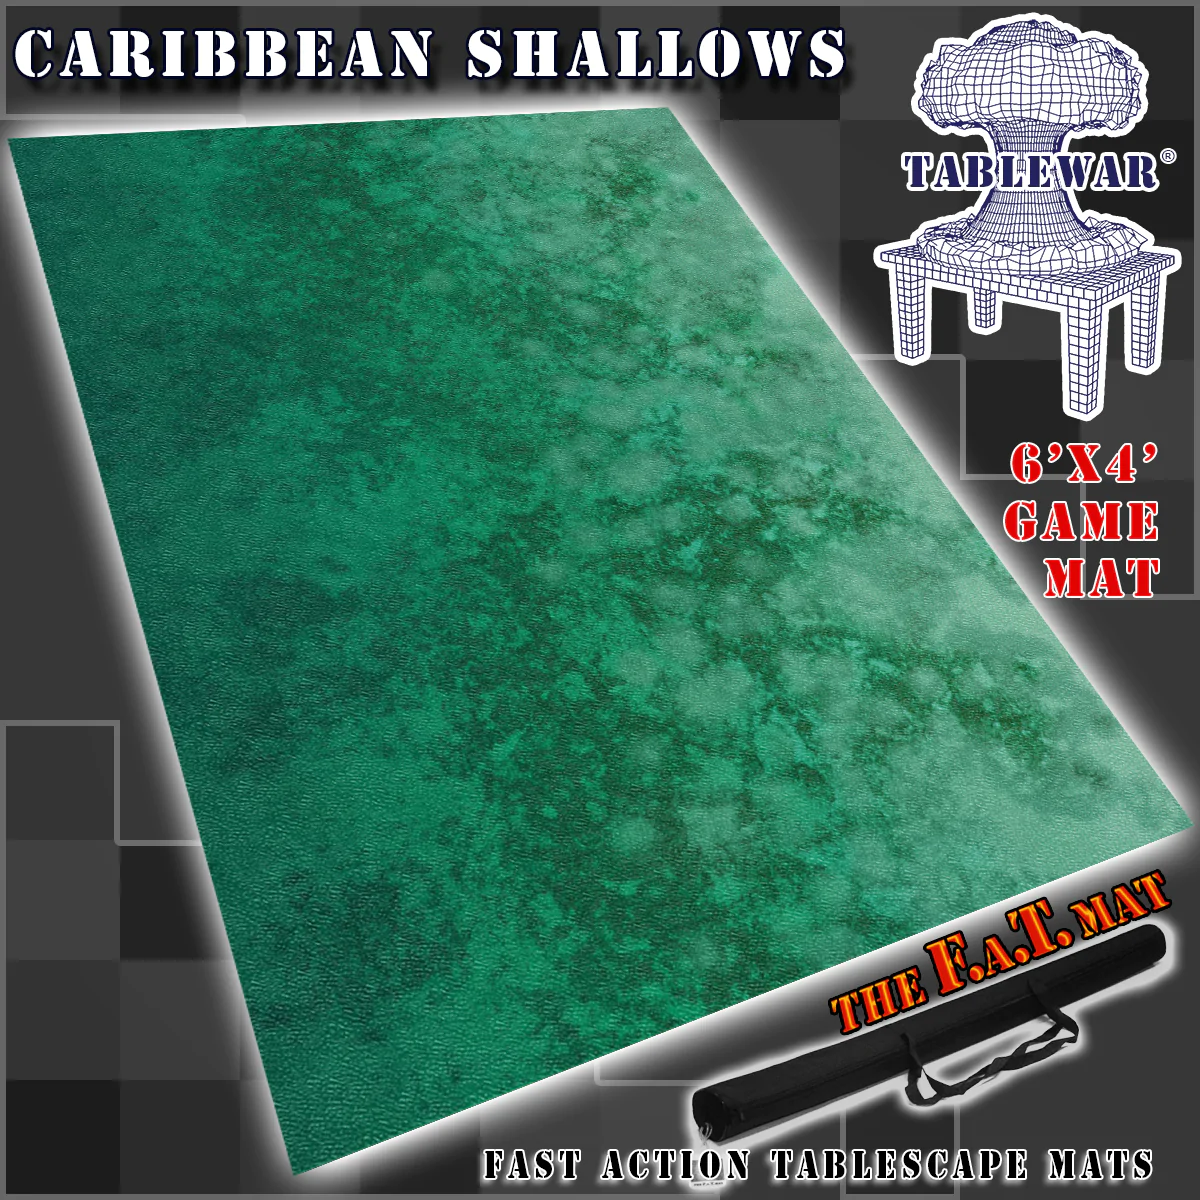 F.A.T. Mats: CARIBBEAN SHALLOWS (LIGHTER OCEAN) 6X4 